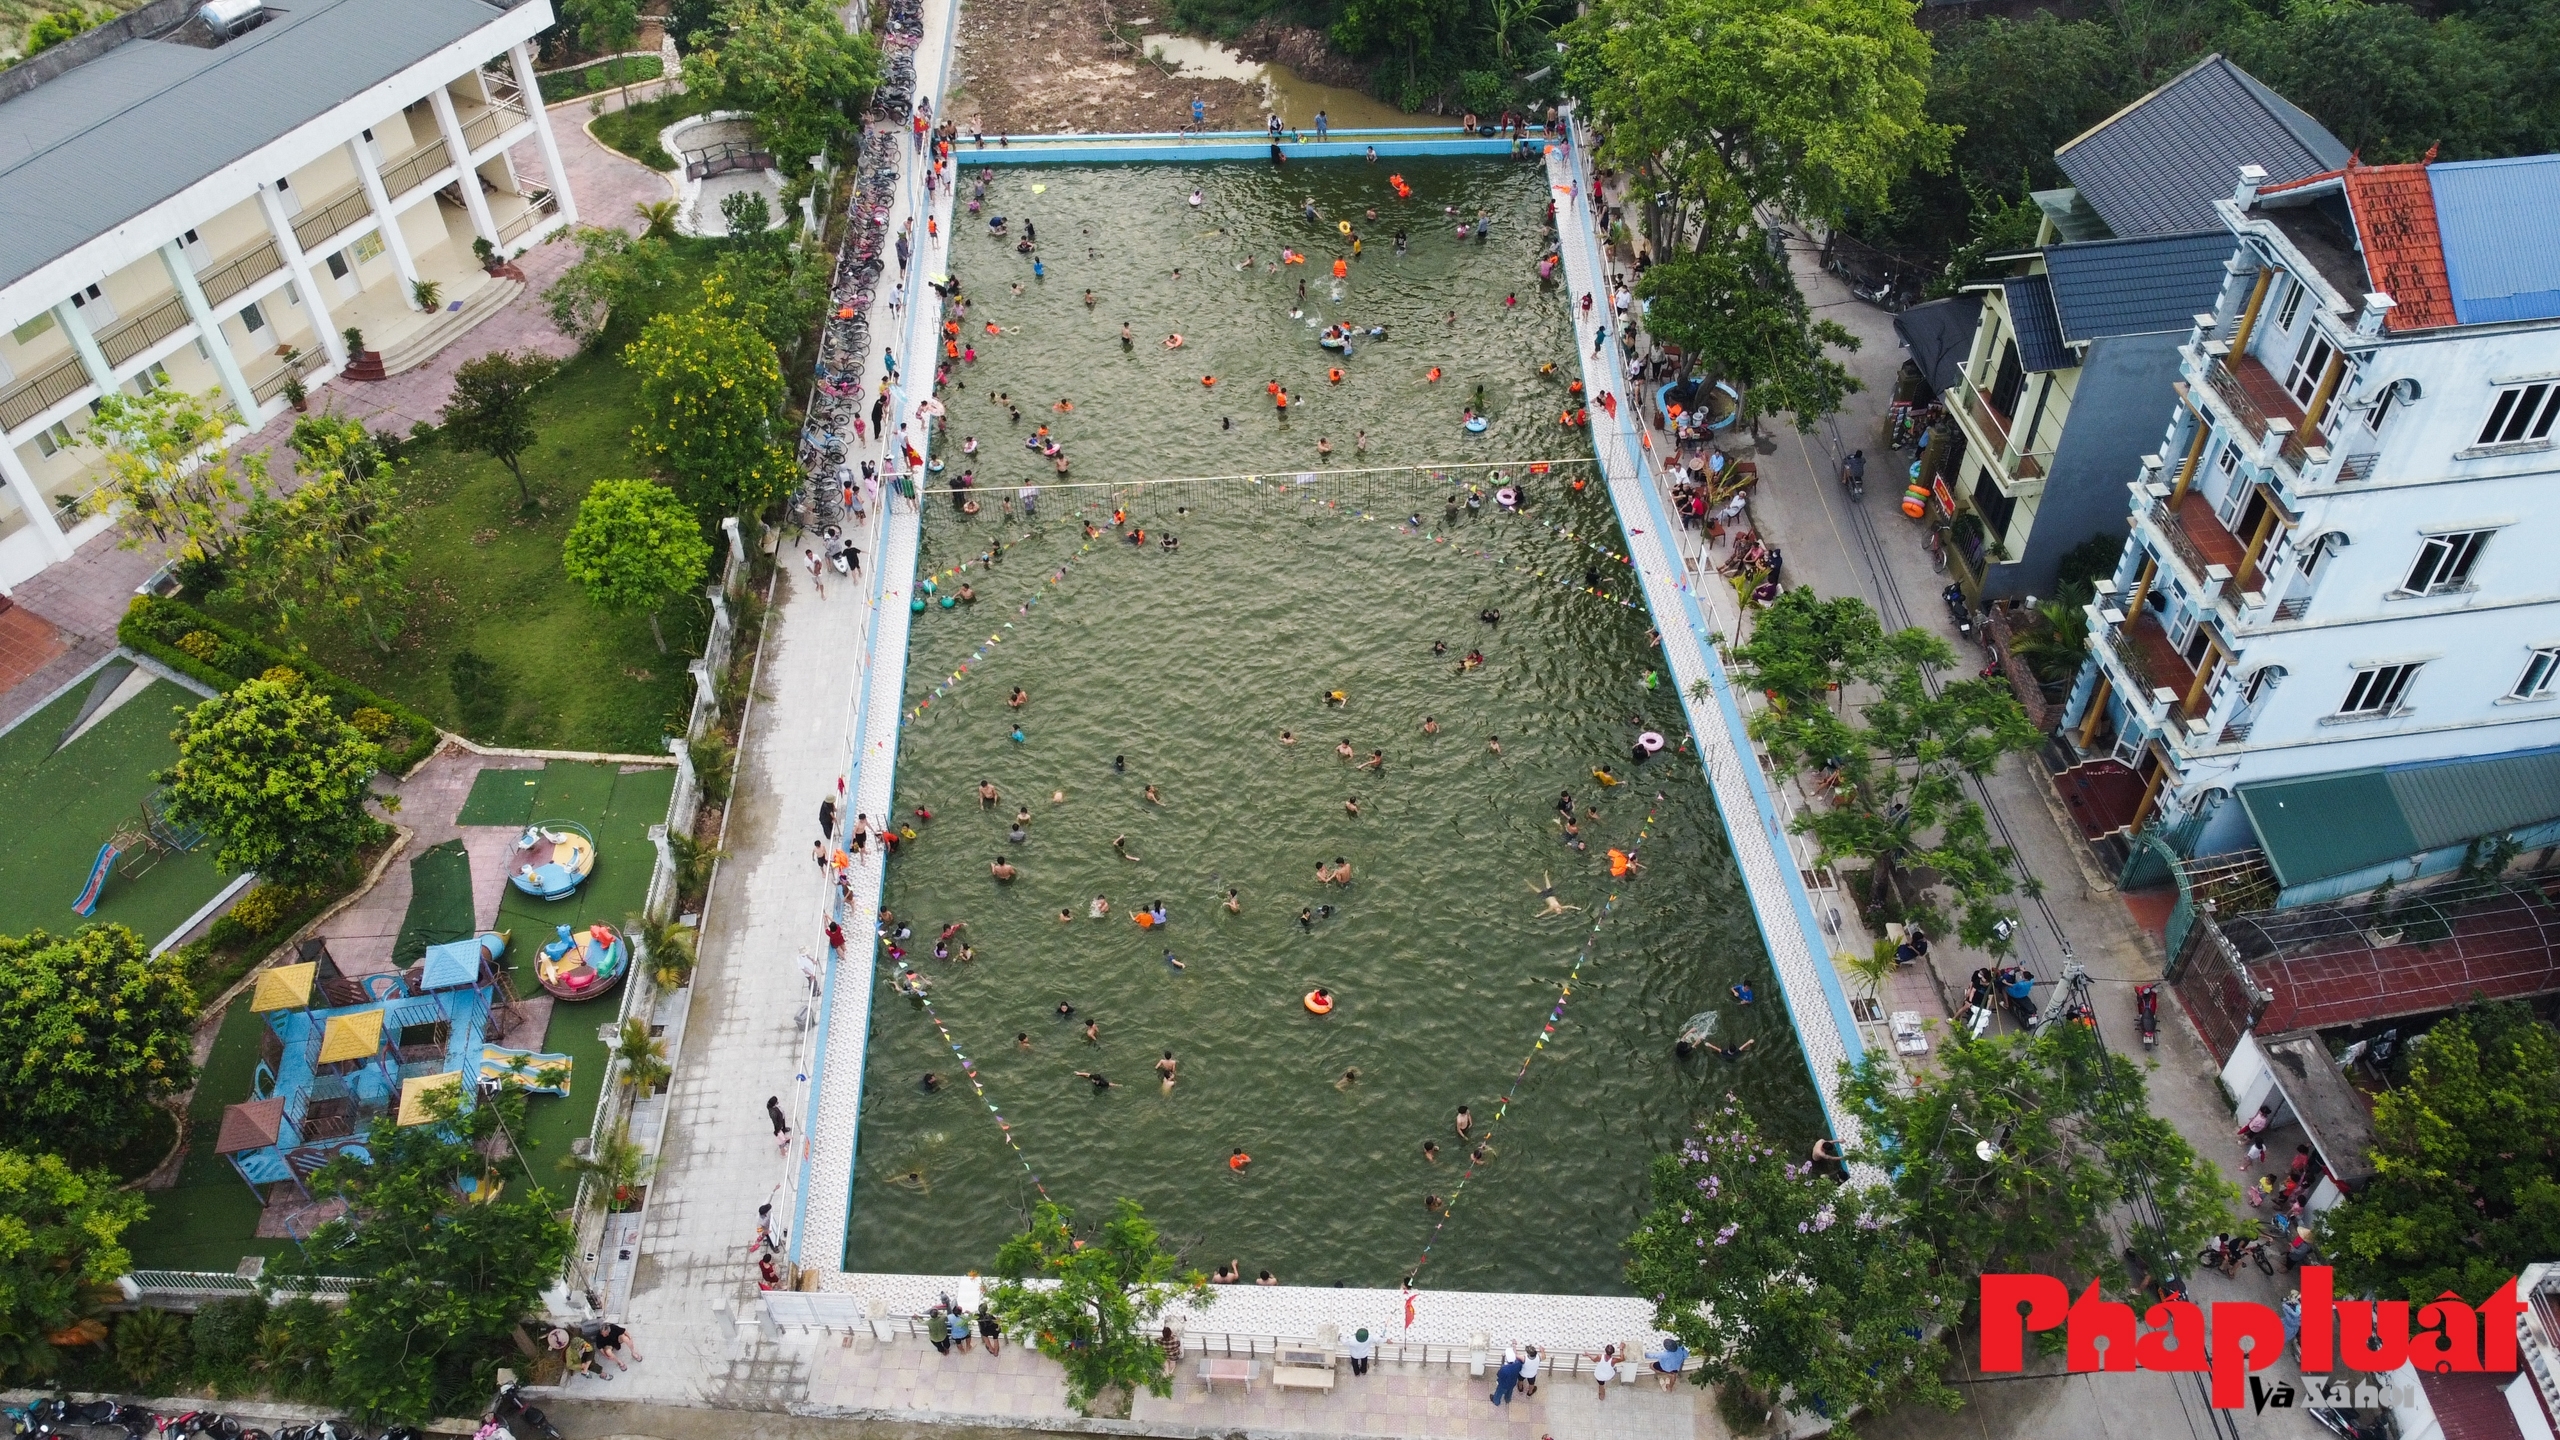 Hà Nội: Ao làng ô nhiễm được hồi sinh thành bể bơi miễn phí cho trẻ em